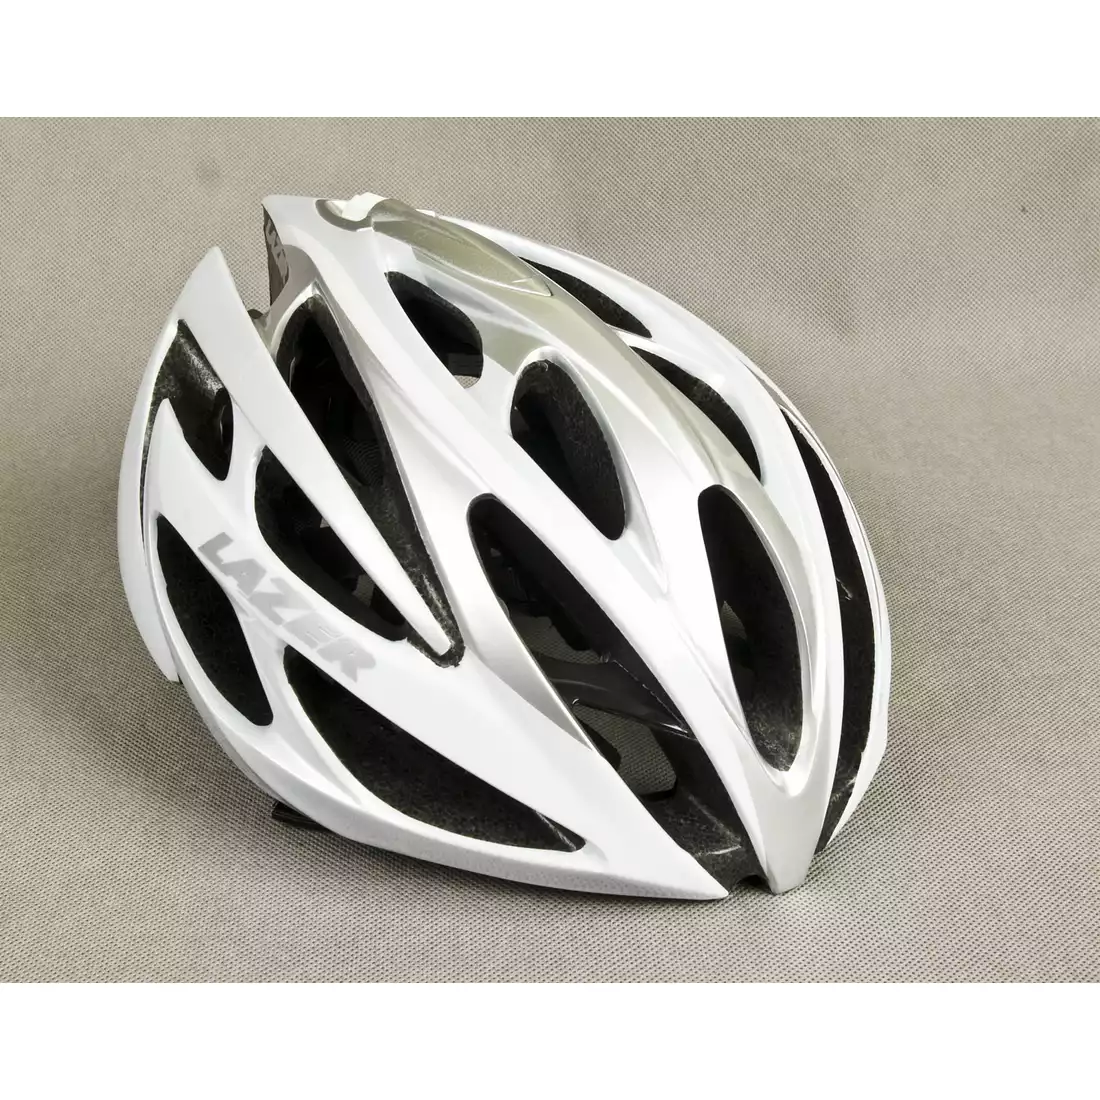 LAZER O2 szosowy kask rowerowy biało-srebrny